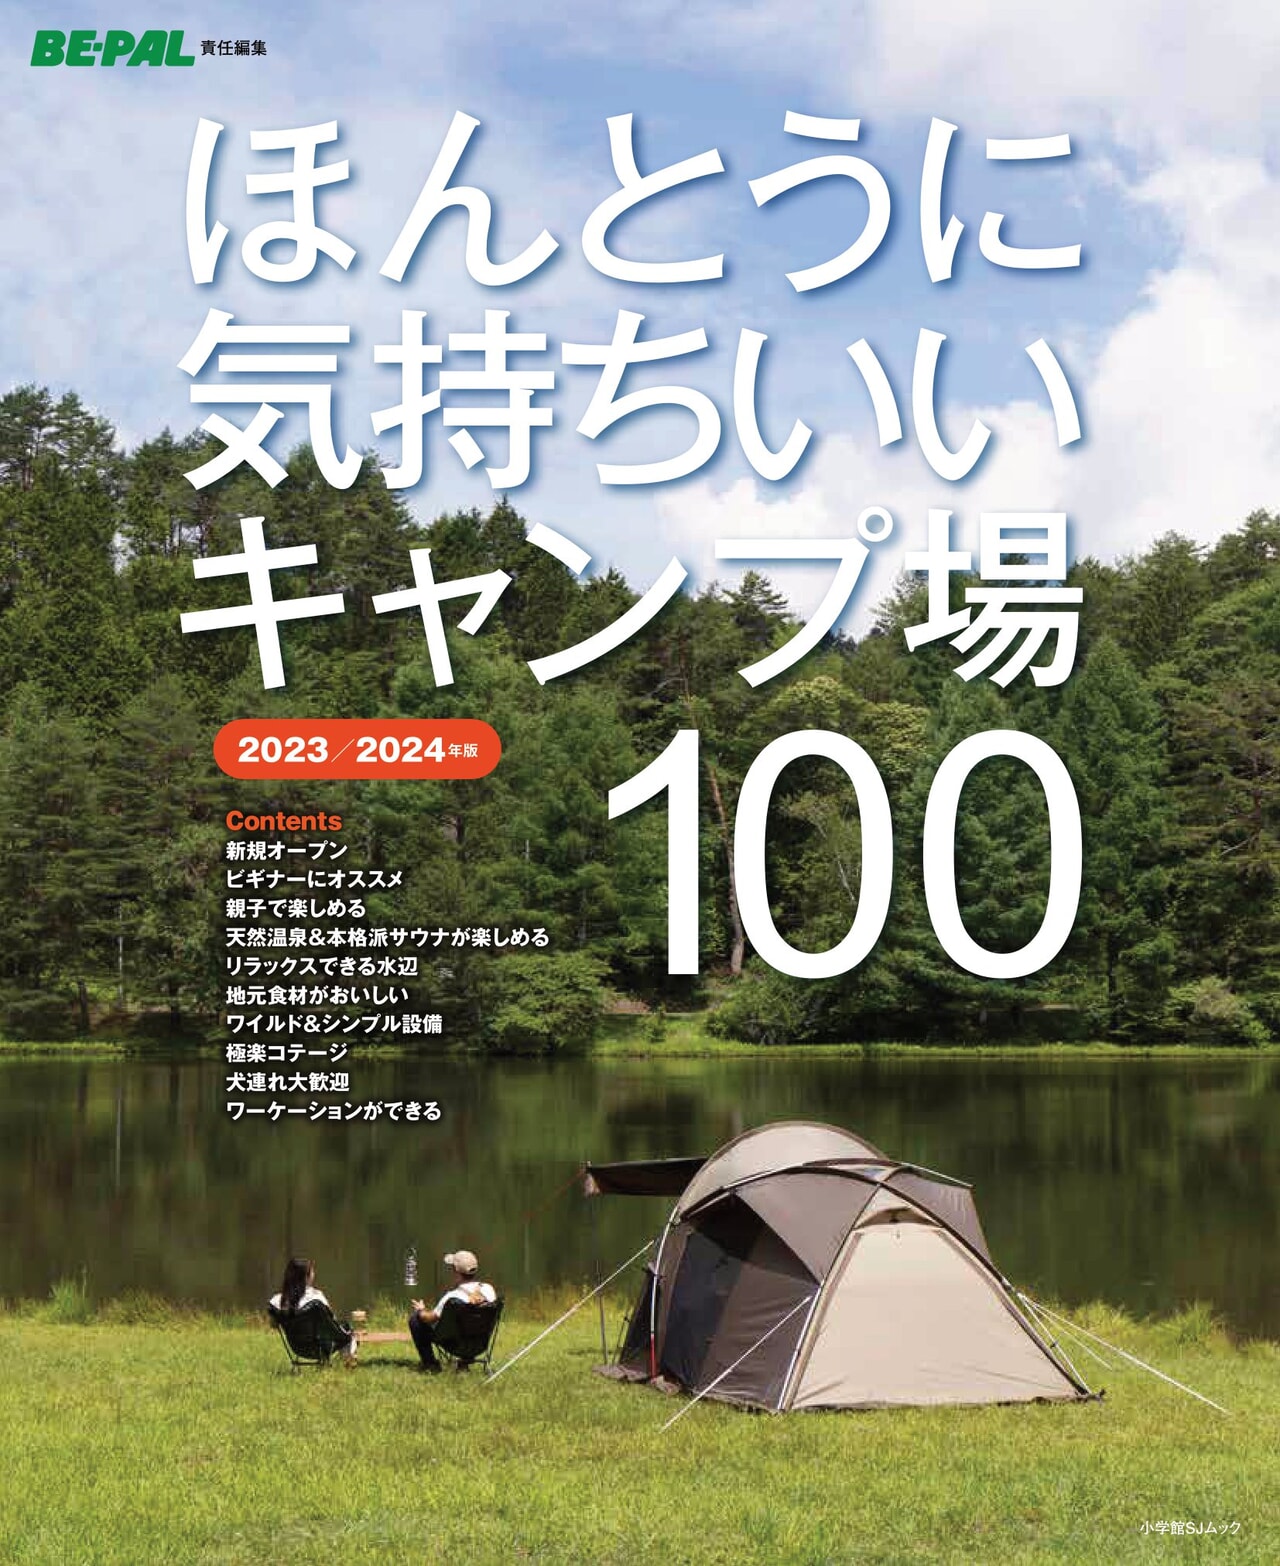 BE-PALセレクトの「ほんとうに気持ちいいキャンプ場100」2023/2024年版が発売開始